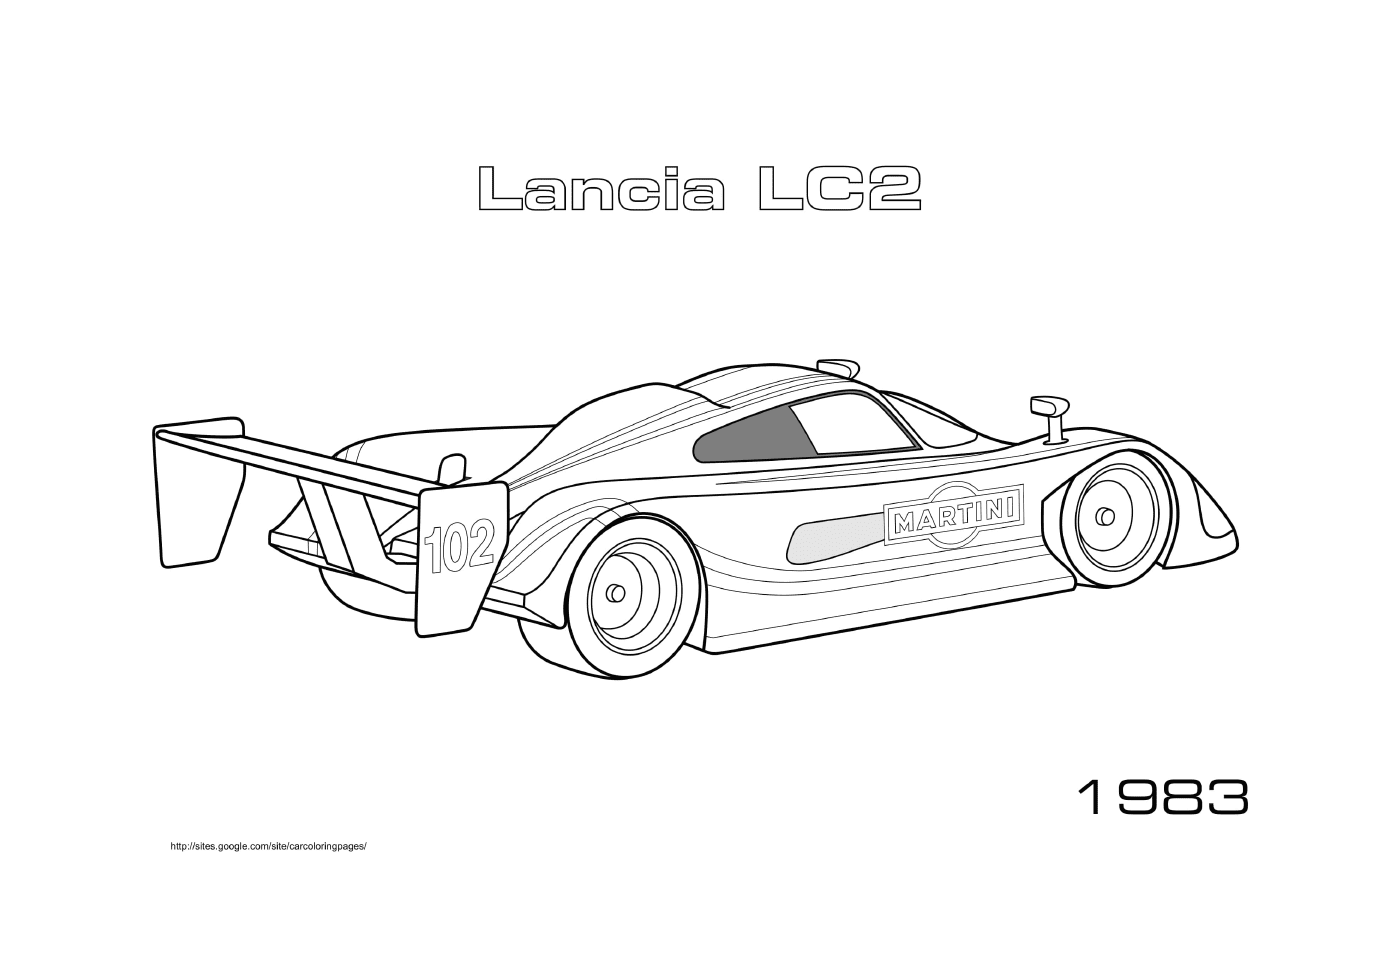  Lancia Lc2 1983年 